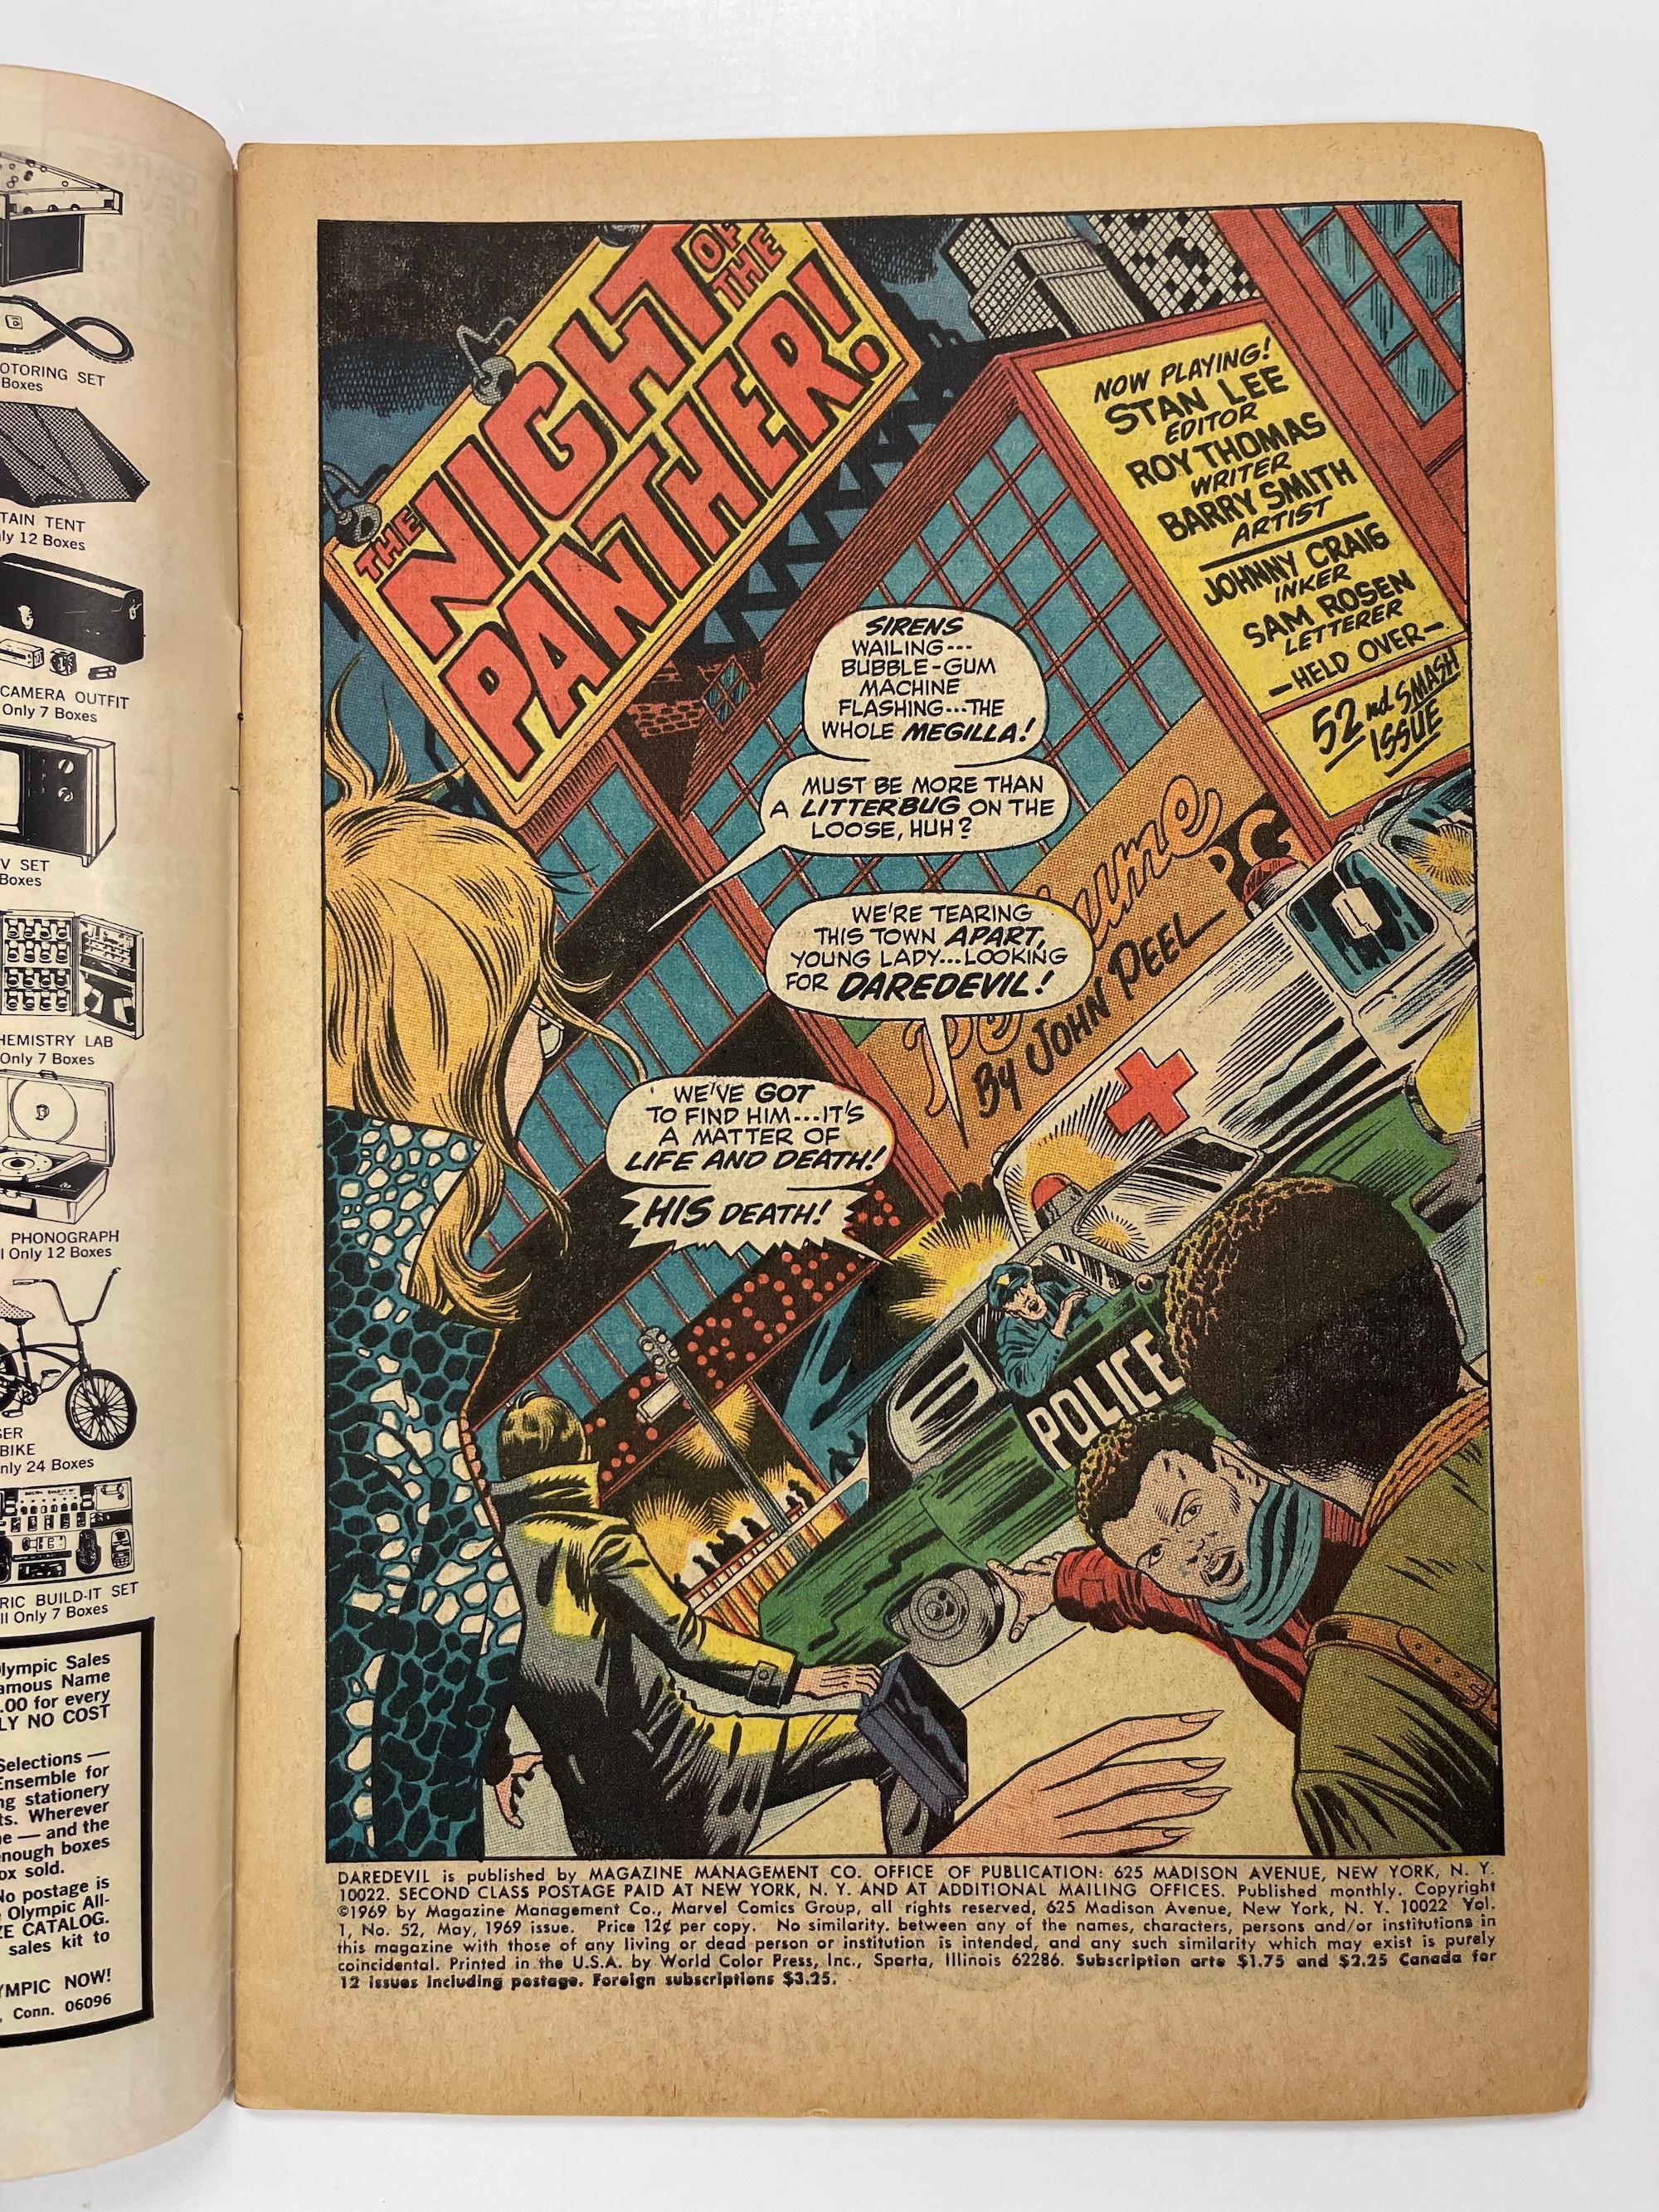 DAREDEVIL #52 MARVEL COMICS MAY 1969 BLACK PANTHER VISION YELLOWJACKET